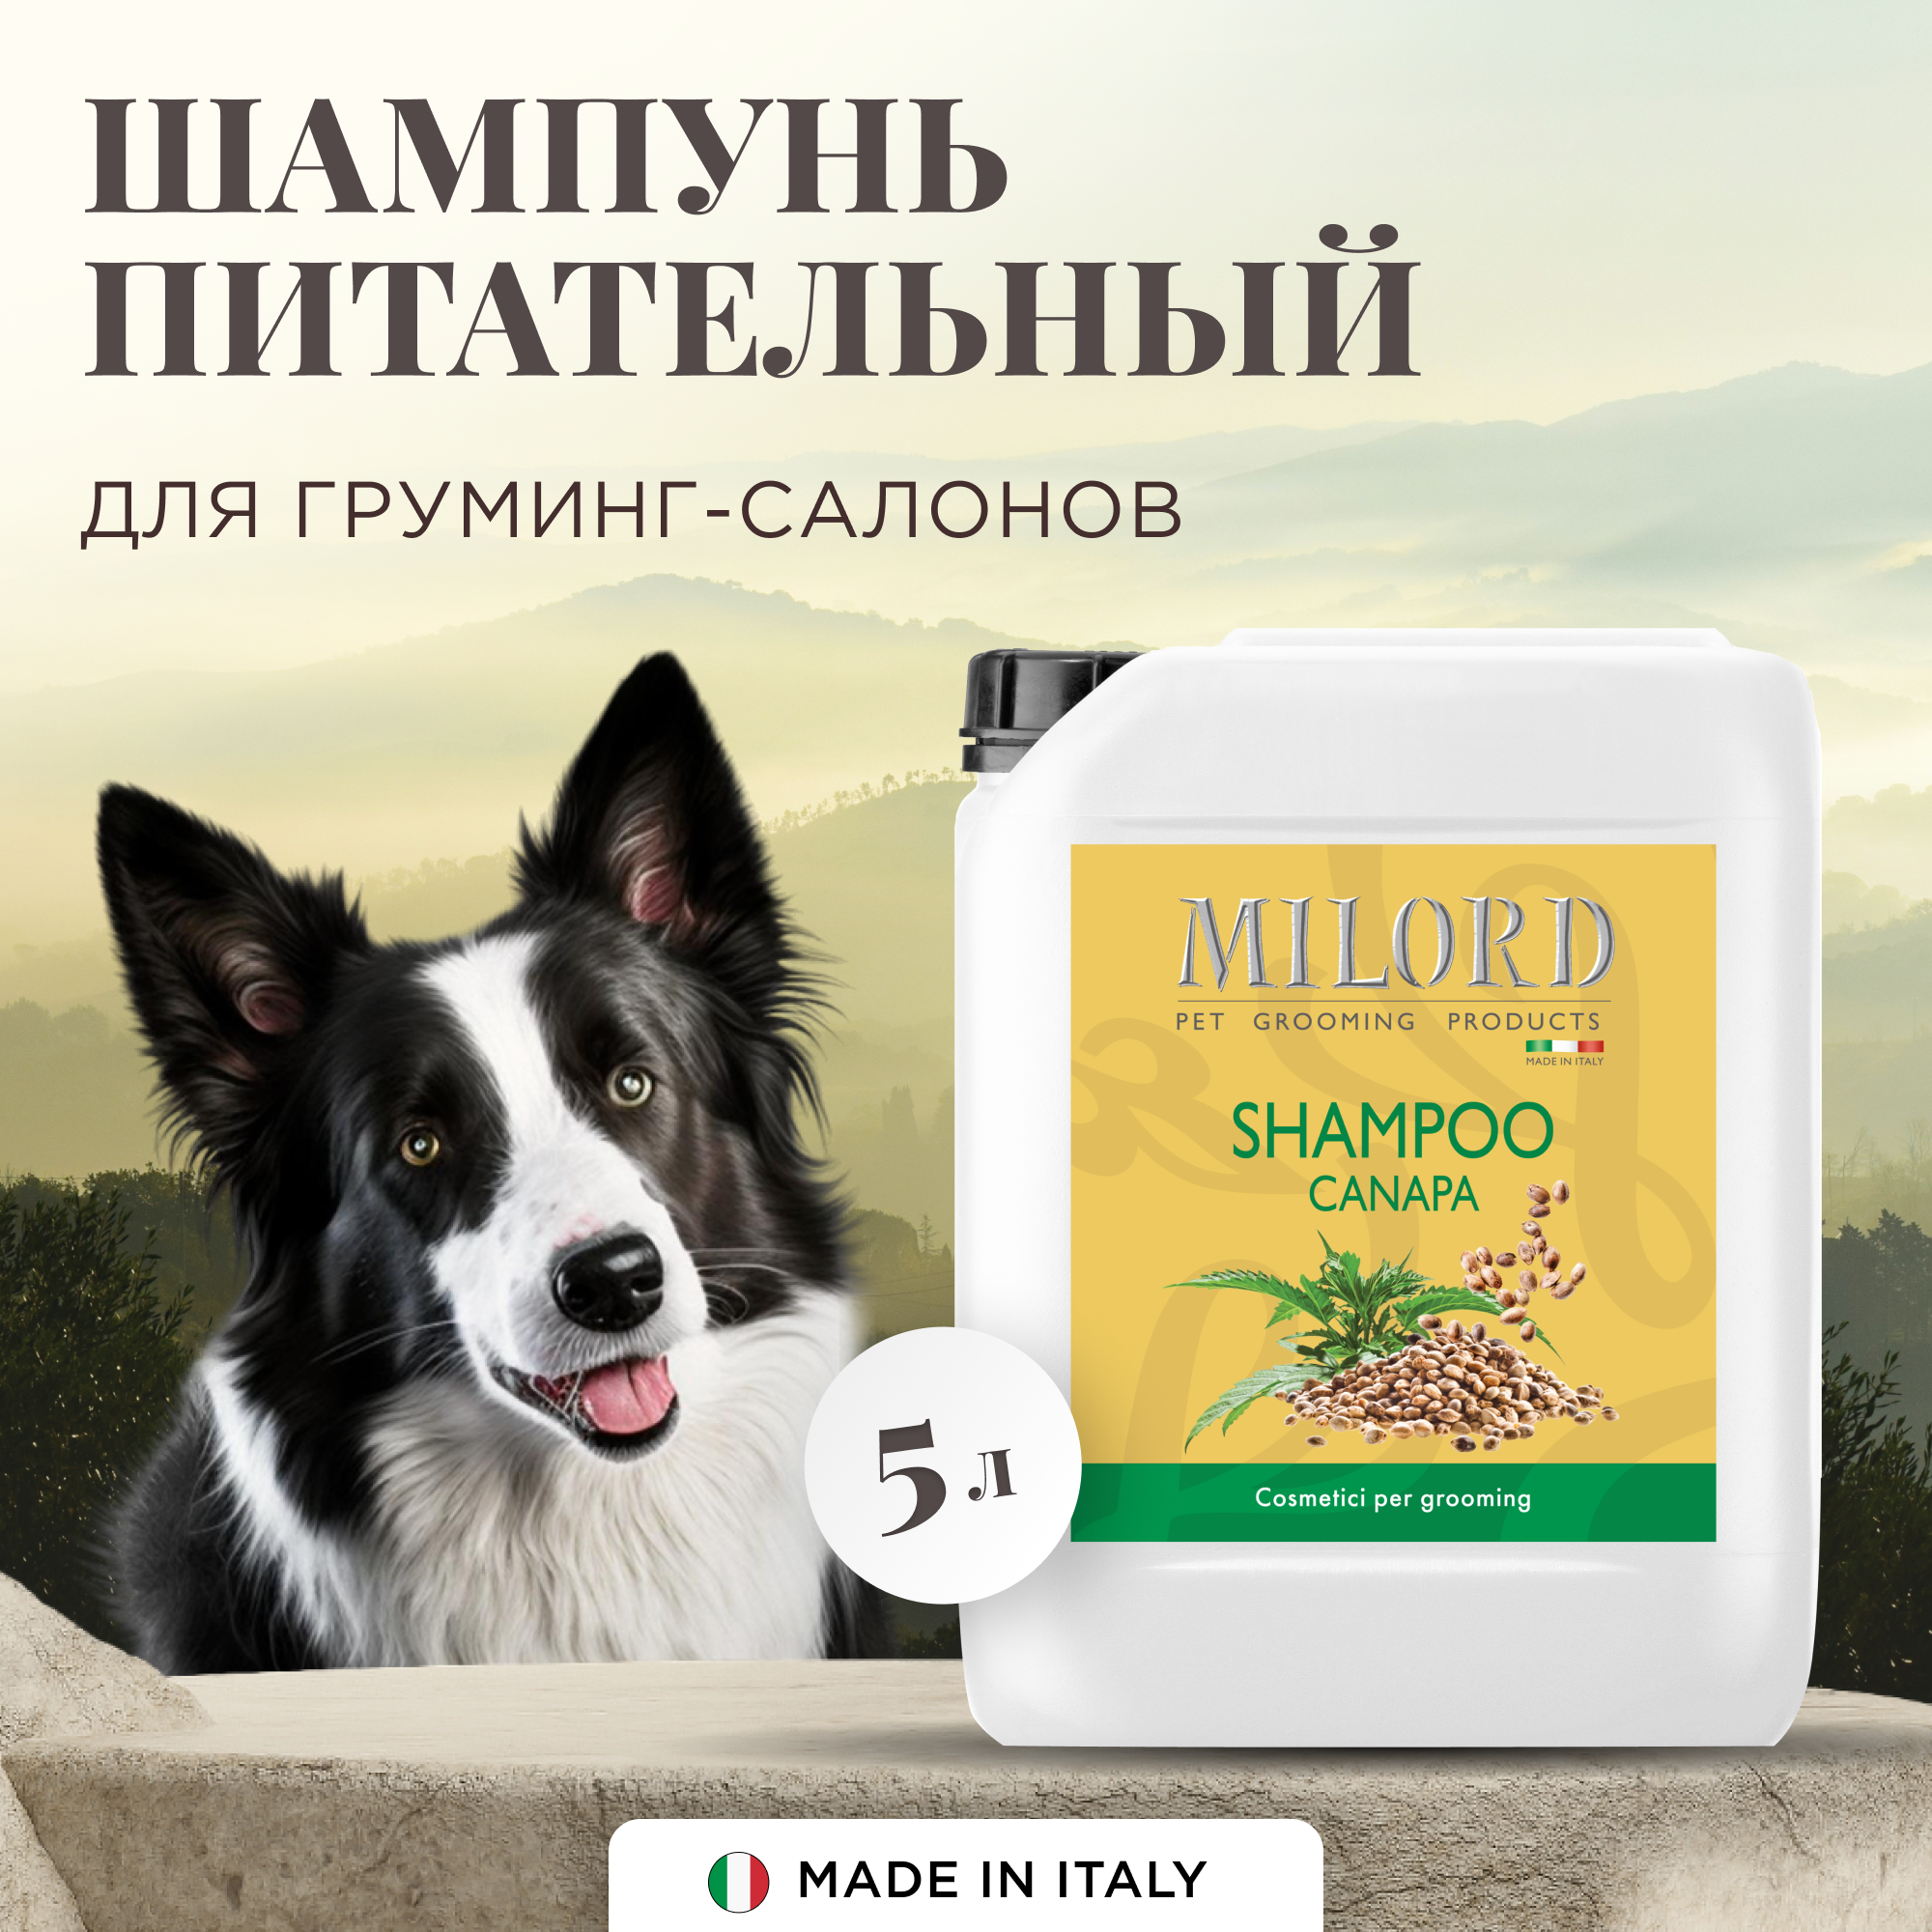 Шампунь для собак питательная Canapa для всех пород, интенсивно питает, увлажняет и восстанавливает поврежденную шерсть, MILORD, Италия, 5 литров